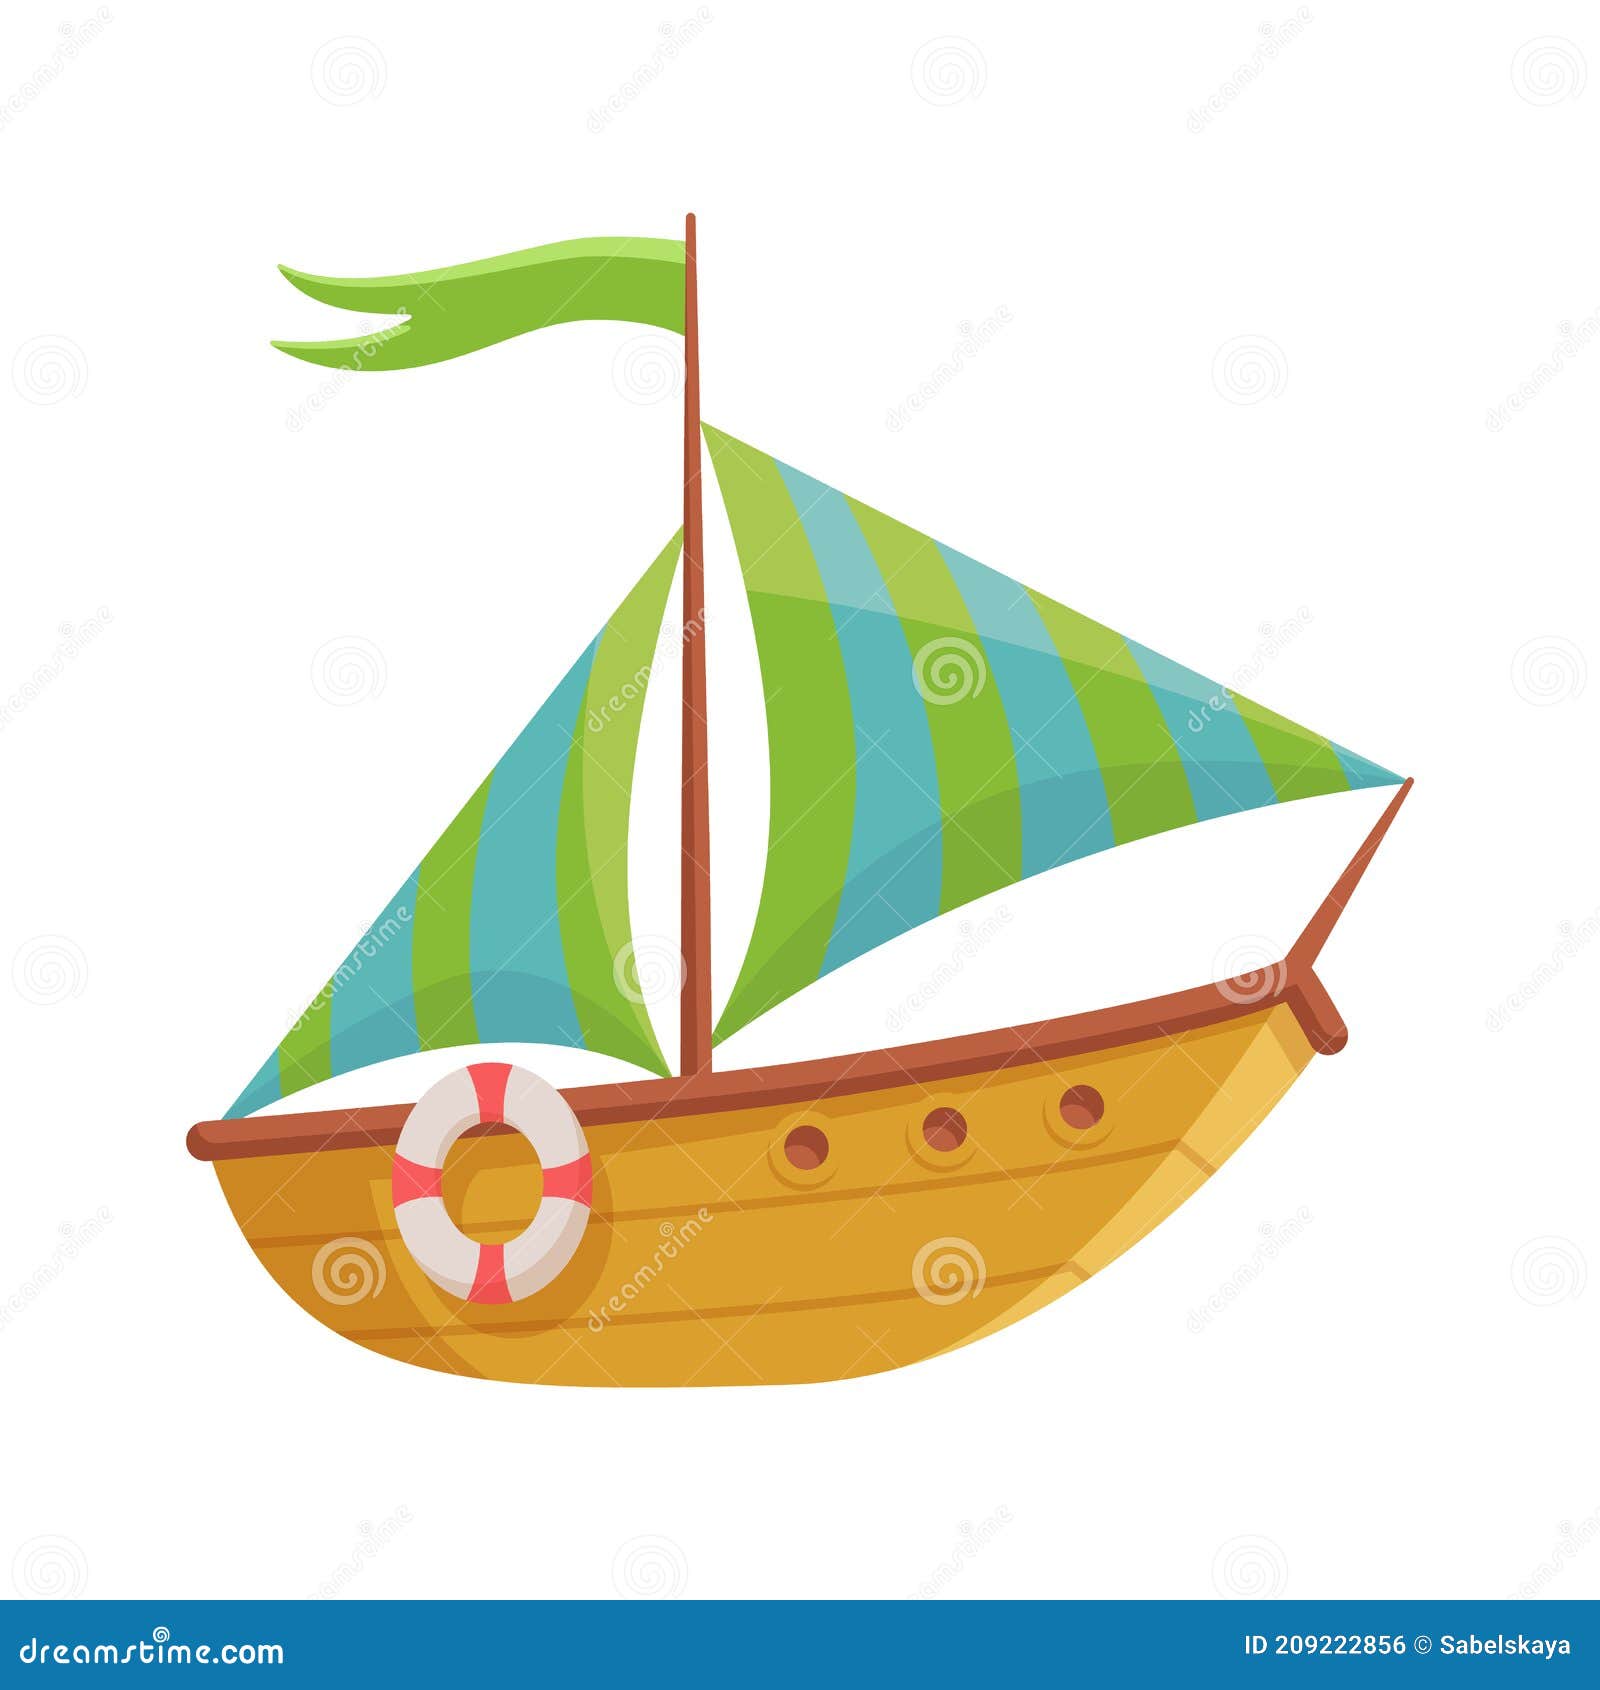 cute cartoon sailboat